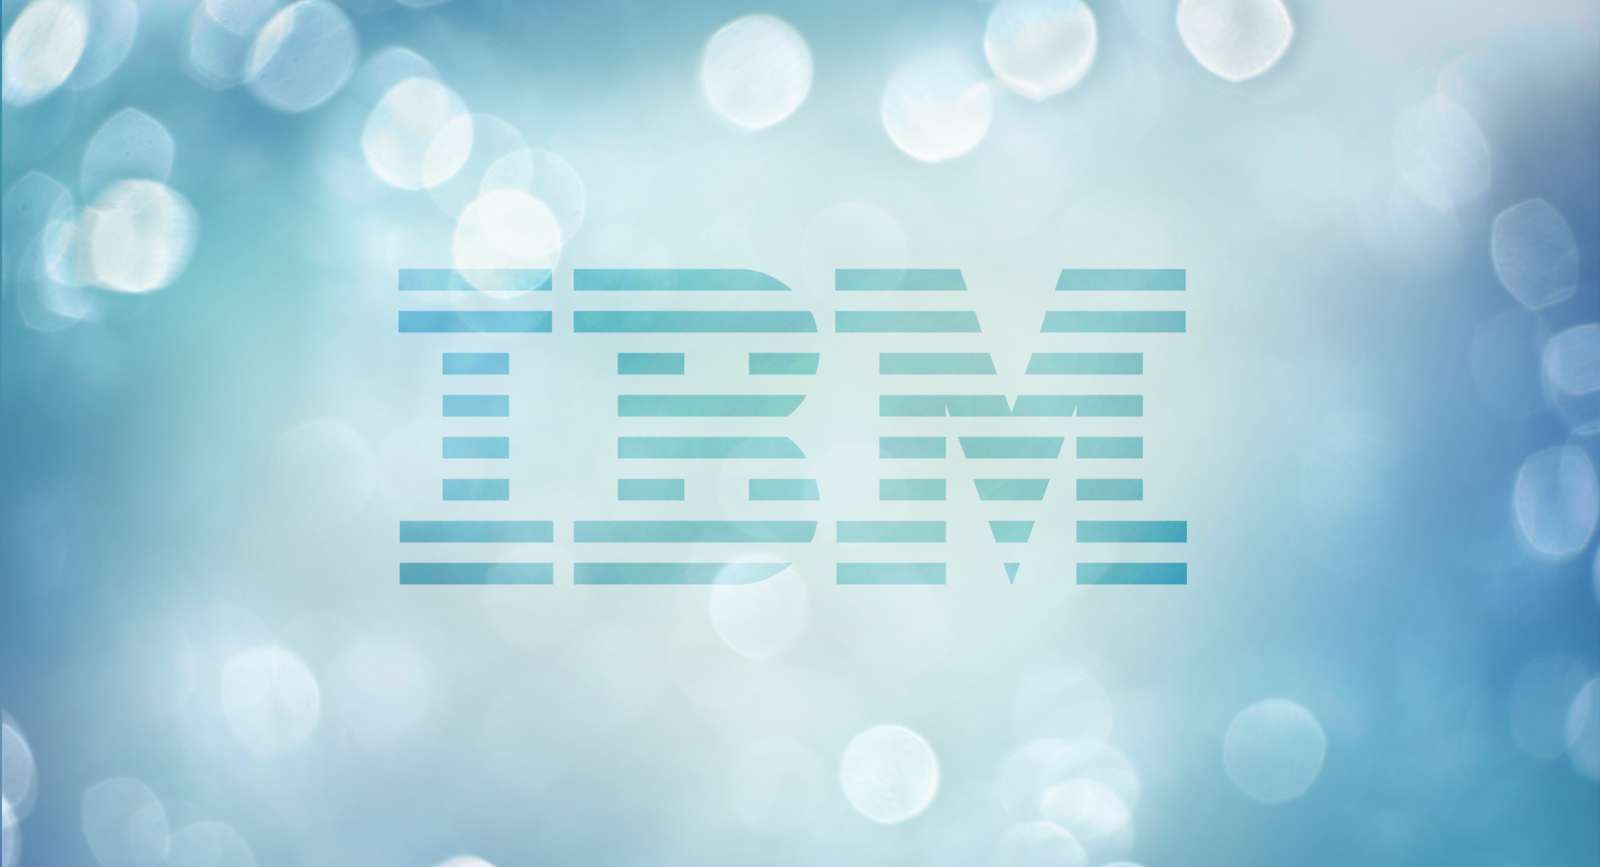 Ibm blue. IBM обои. IBM обои на рабочий стол. Заставка.. IBM.. Высокого.. Качества. Обои 2000*1200 IBM.